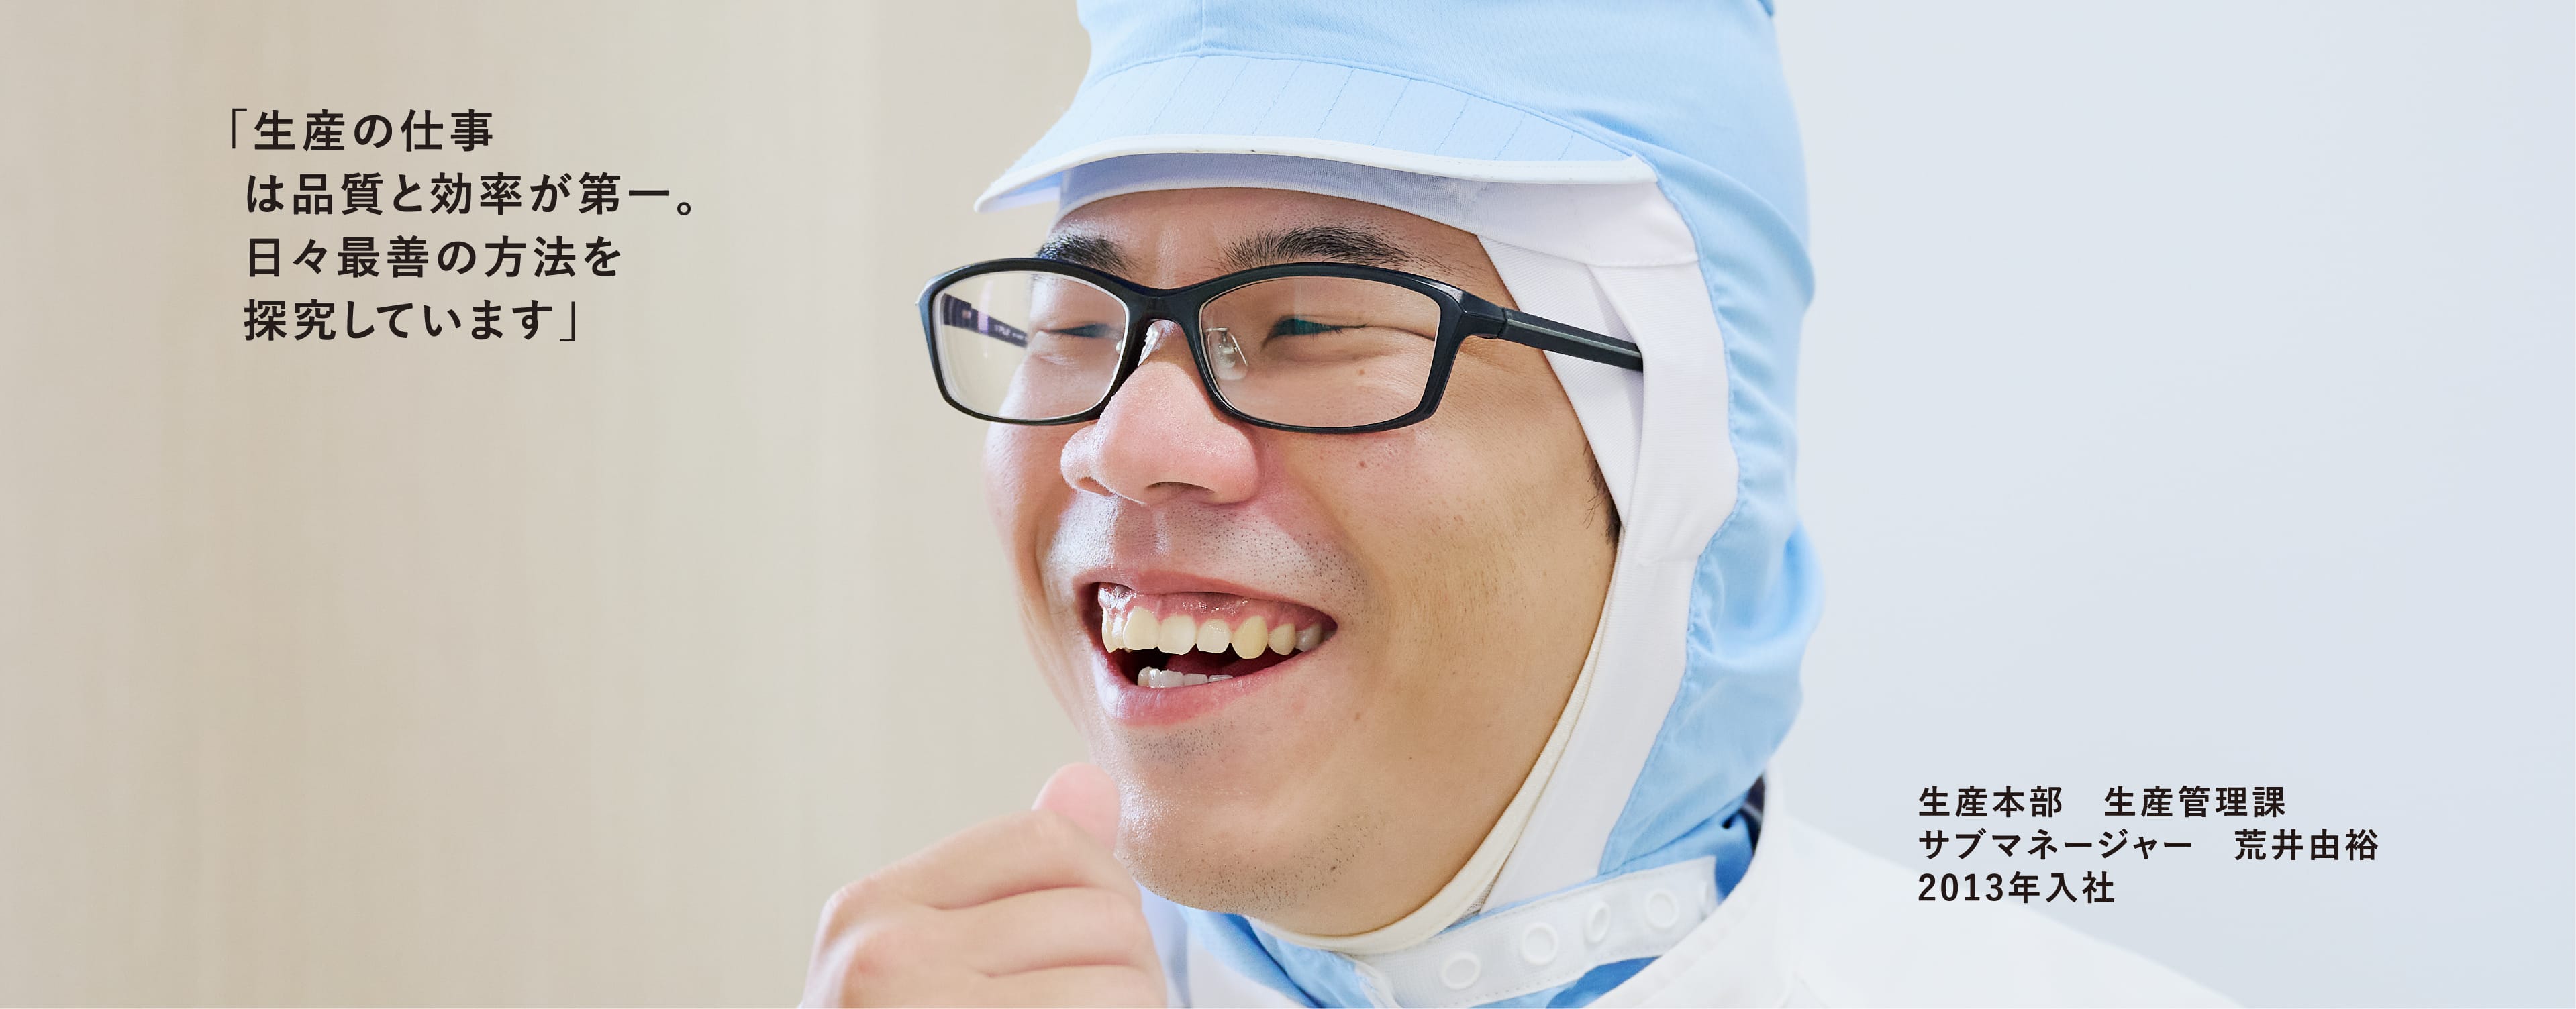 白い作業服を着ている笑顔の男性。営業部:営業課:主任 荒井由裕 2013年入社